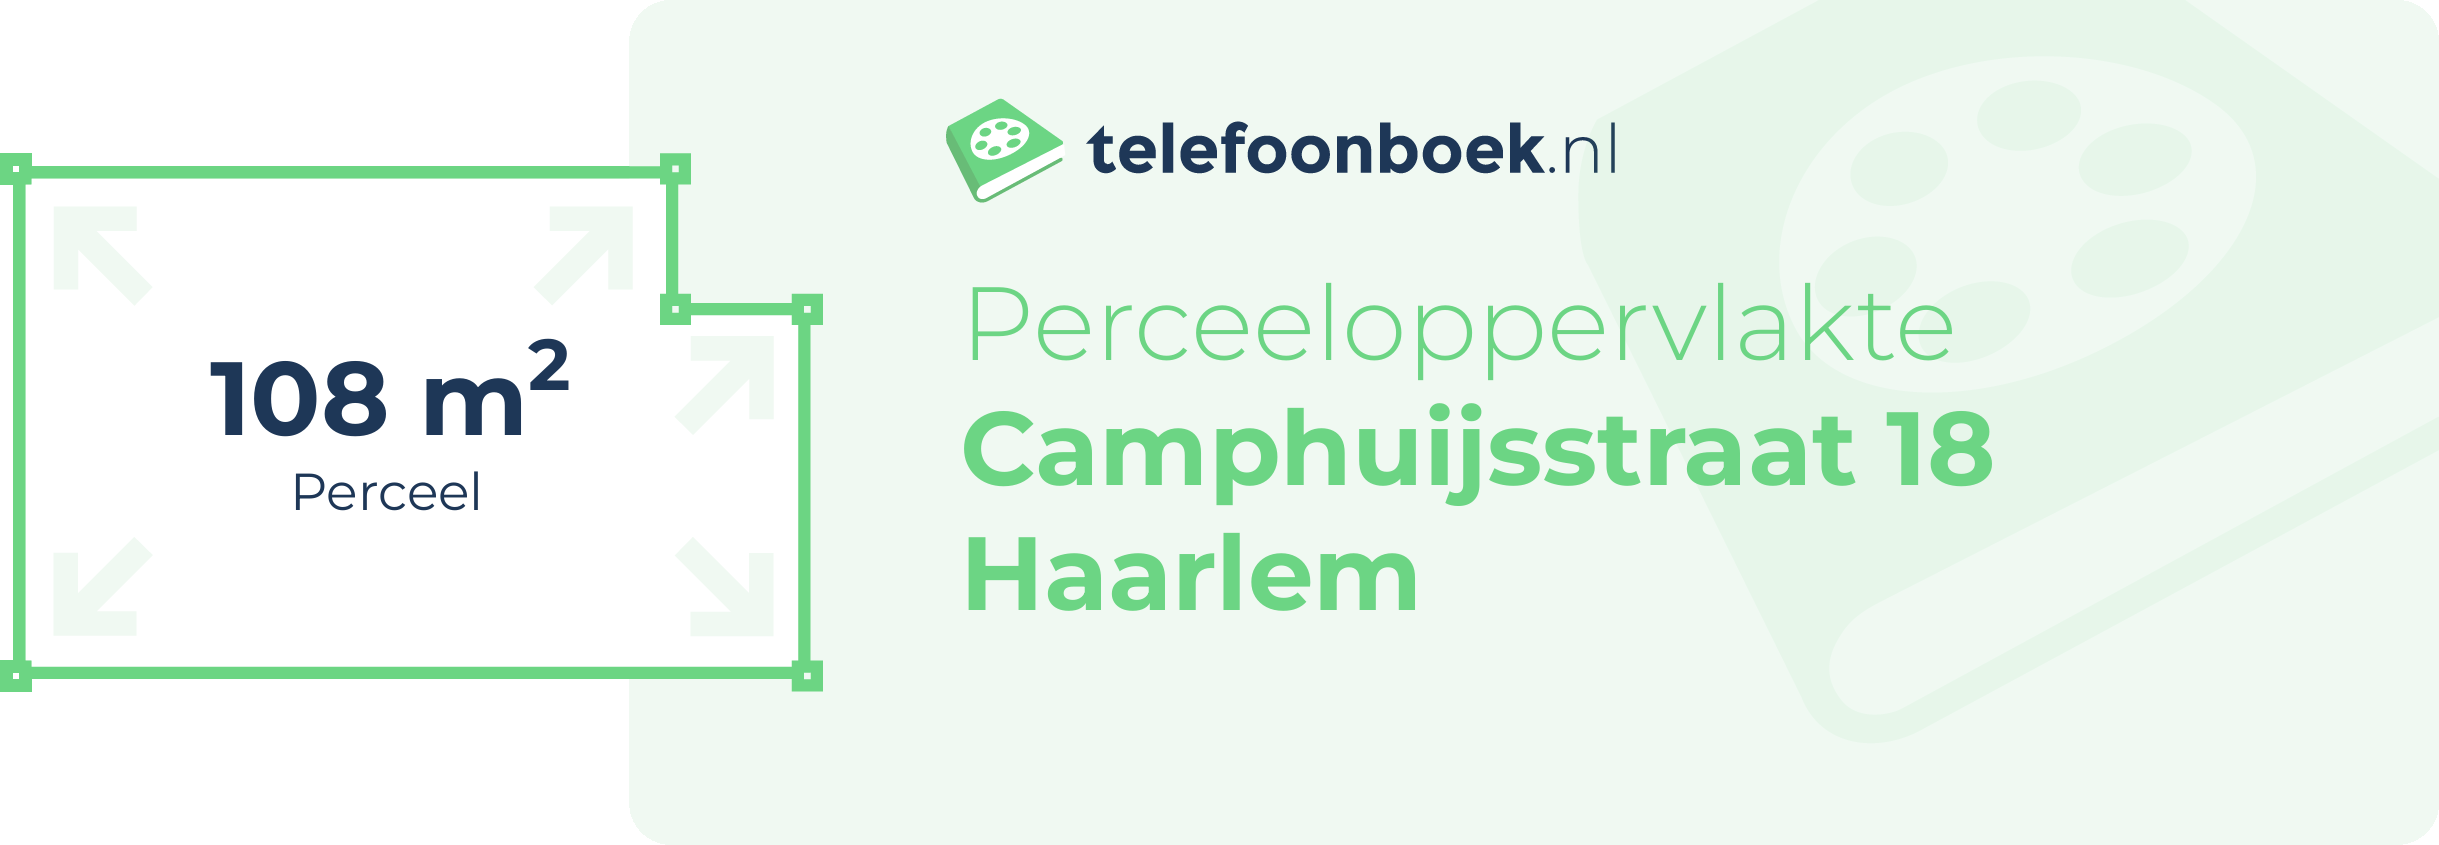 Perceeloppervlakte Camphuijsstraat 18 Haarlem